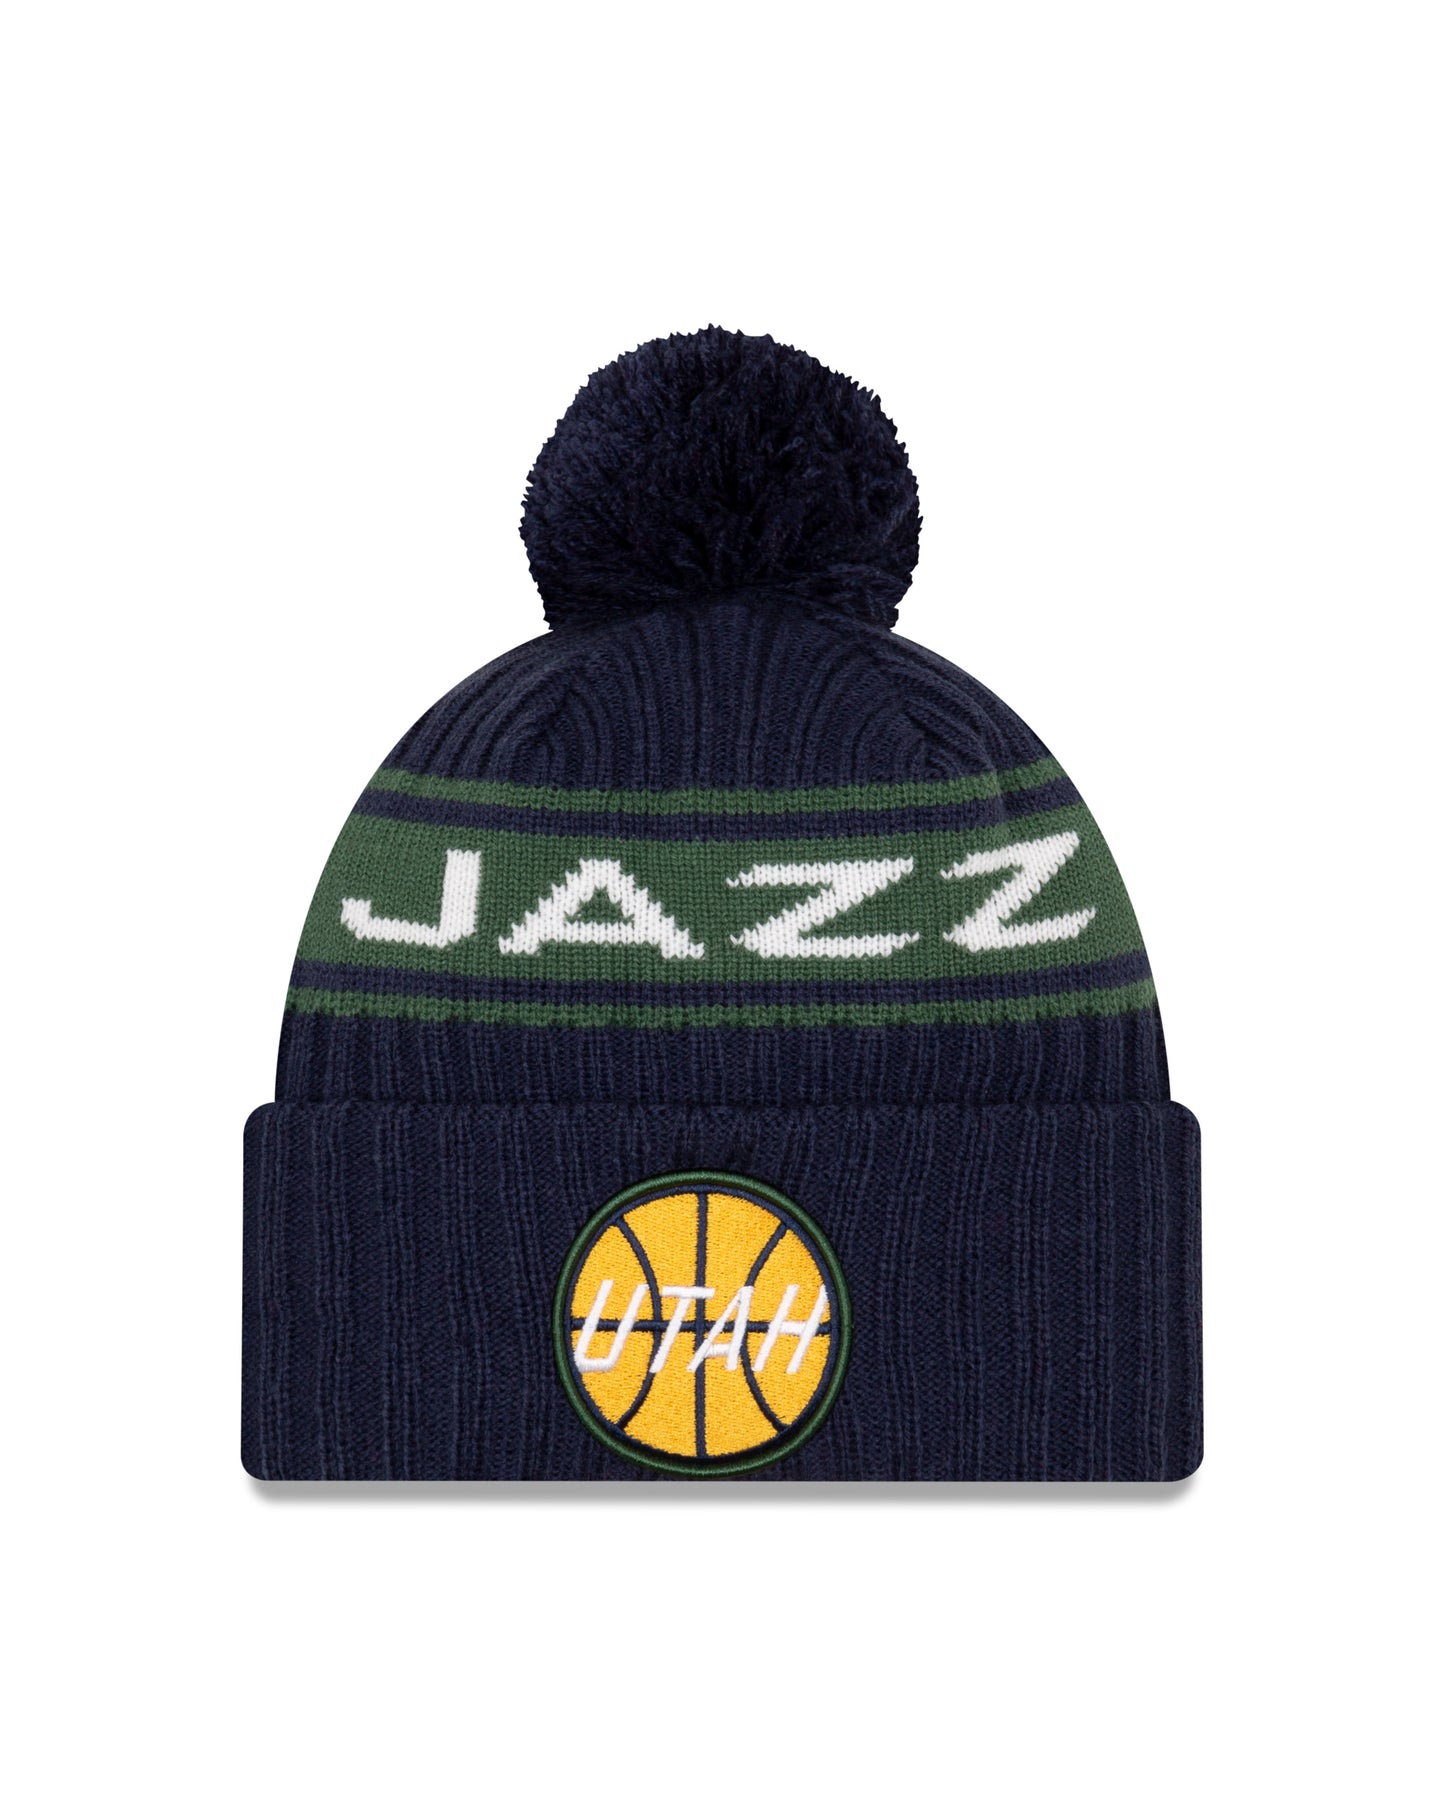 Utah Jazz New Era Draft Knit Hat